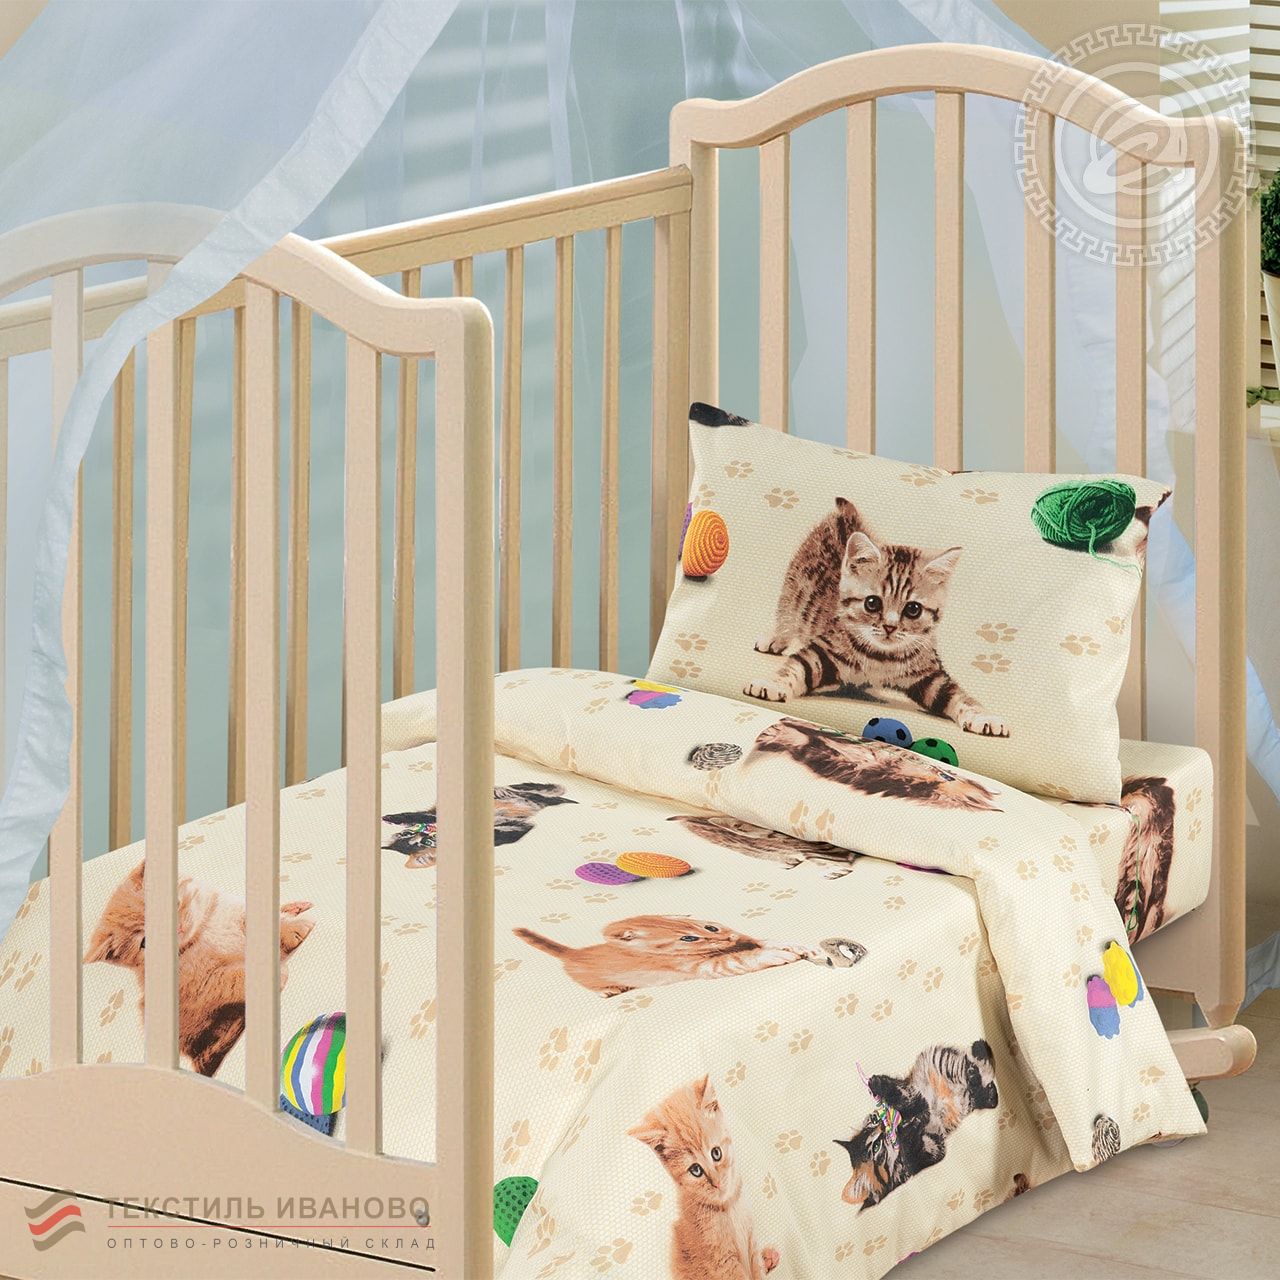  Комплект детского постельного белья Усатый-полосатый бязь ясельная, фото 1 